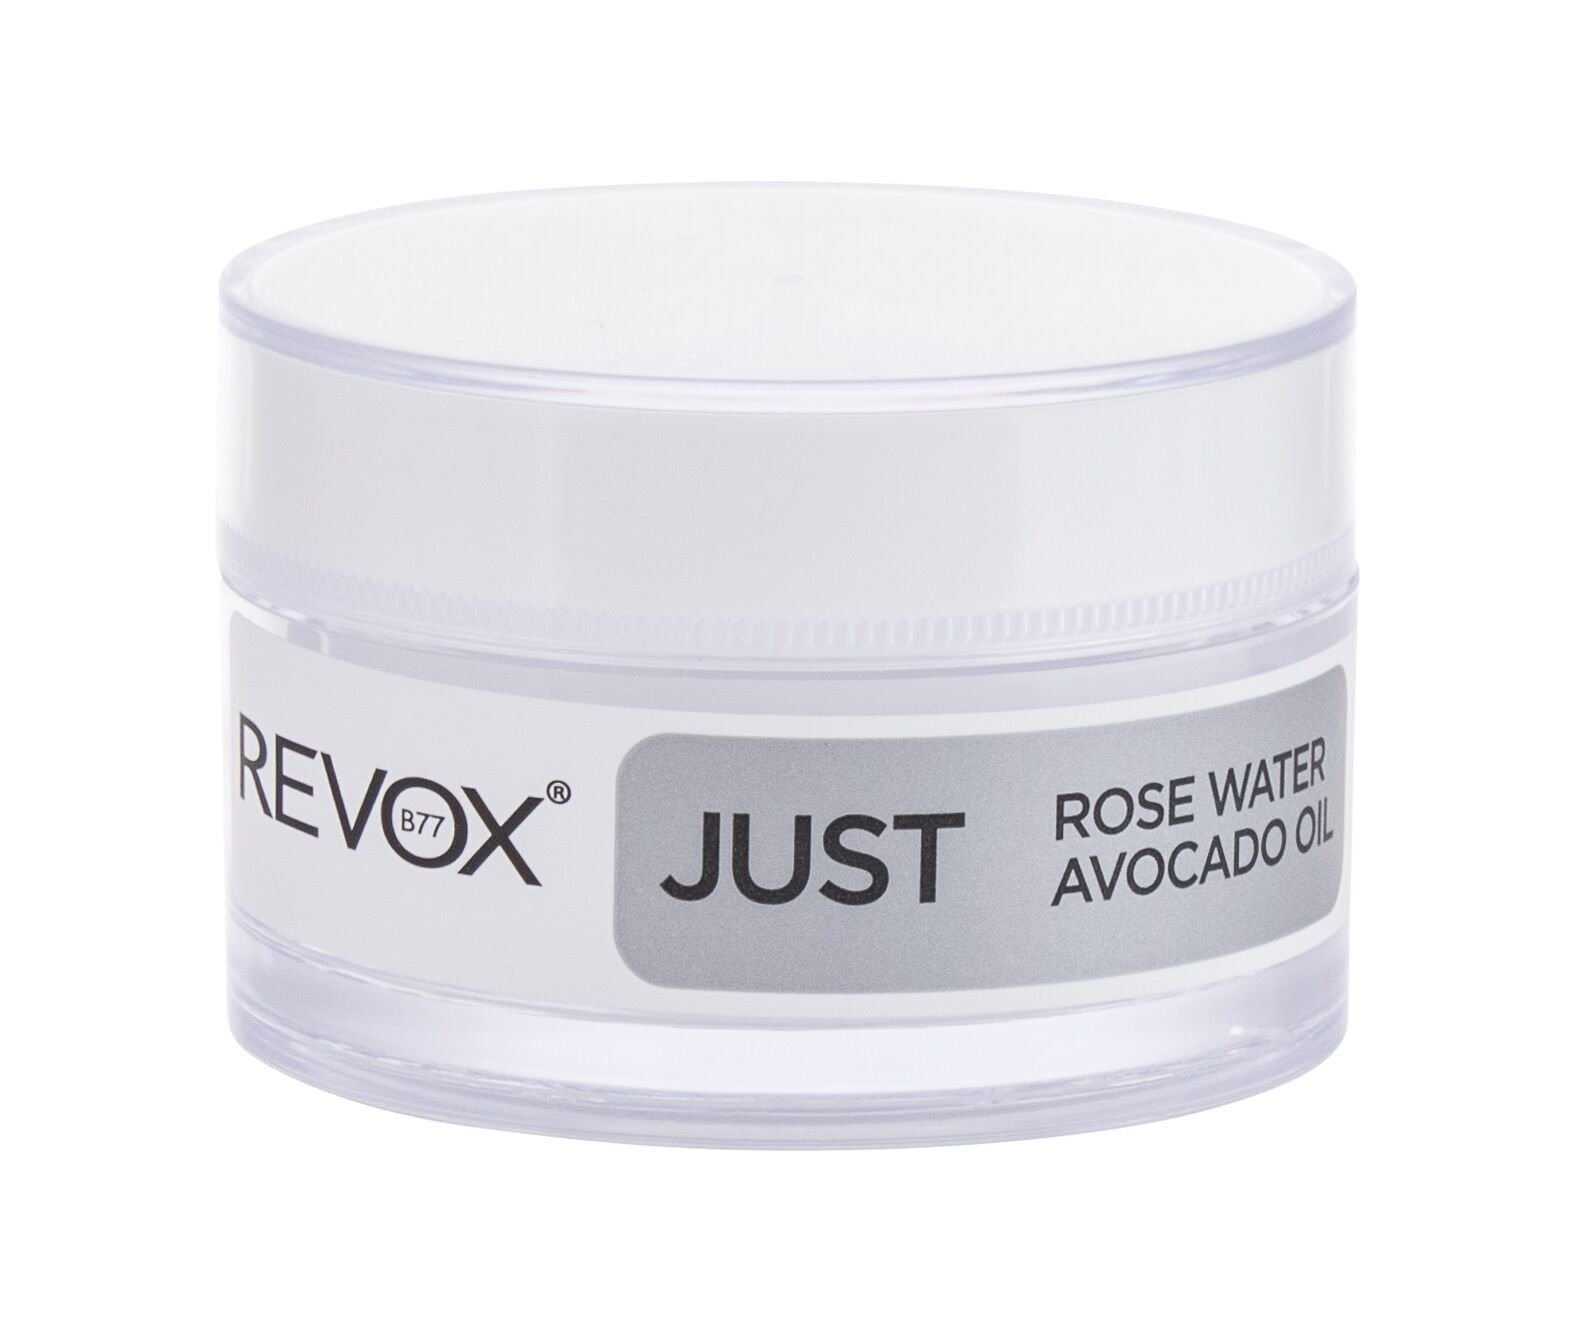 Revox Just Rose Water Avocado Oil paakių kremas